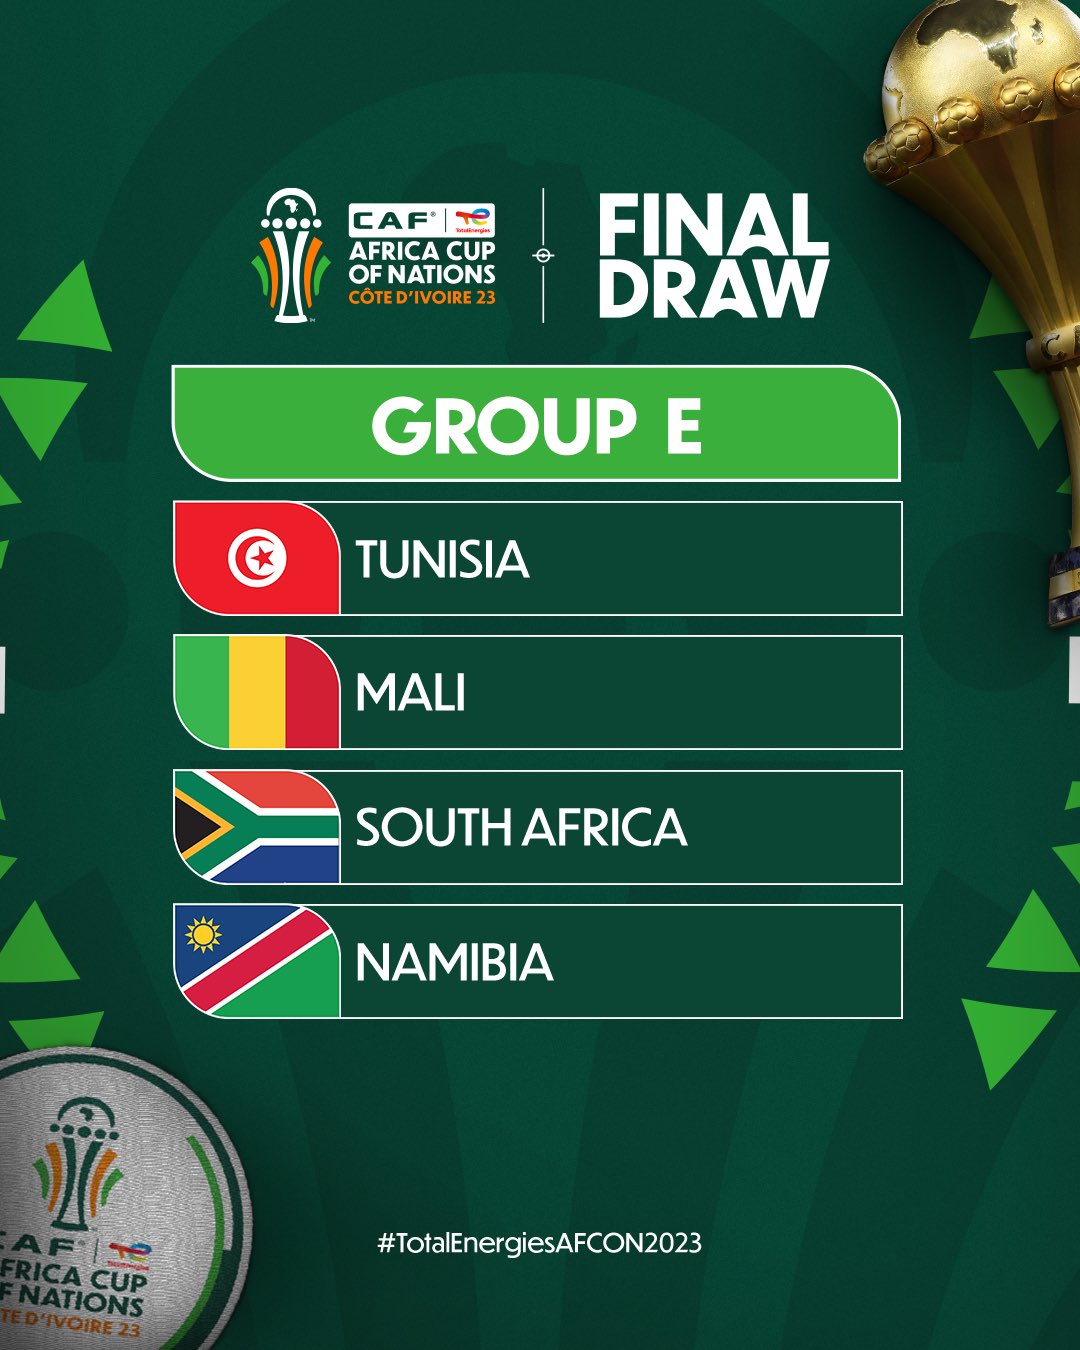 تونس في بطولة أفريقية المنتخب التونسي ضمن المجموعة الخامسة الى جانب مالي وجنوب افريقيا وناميبيا